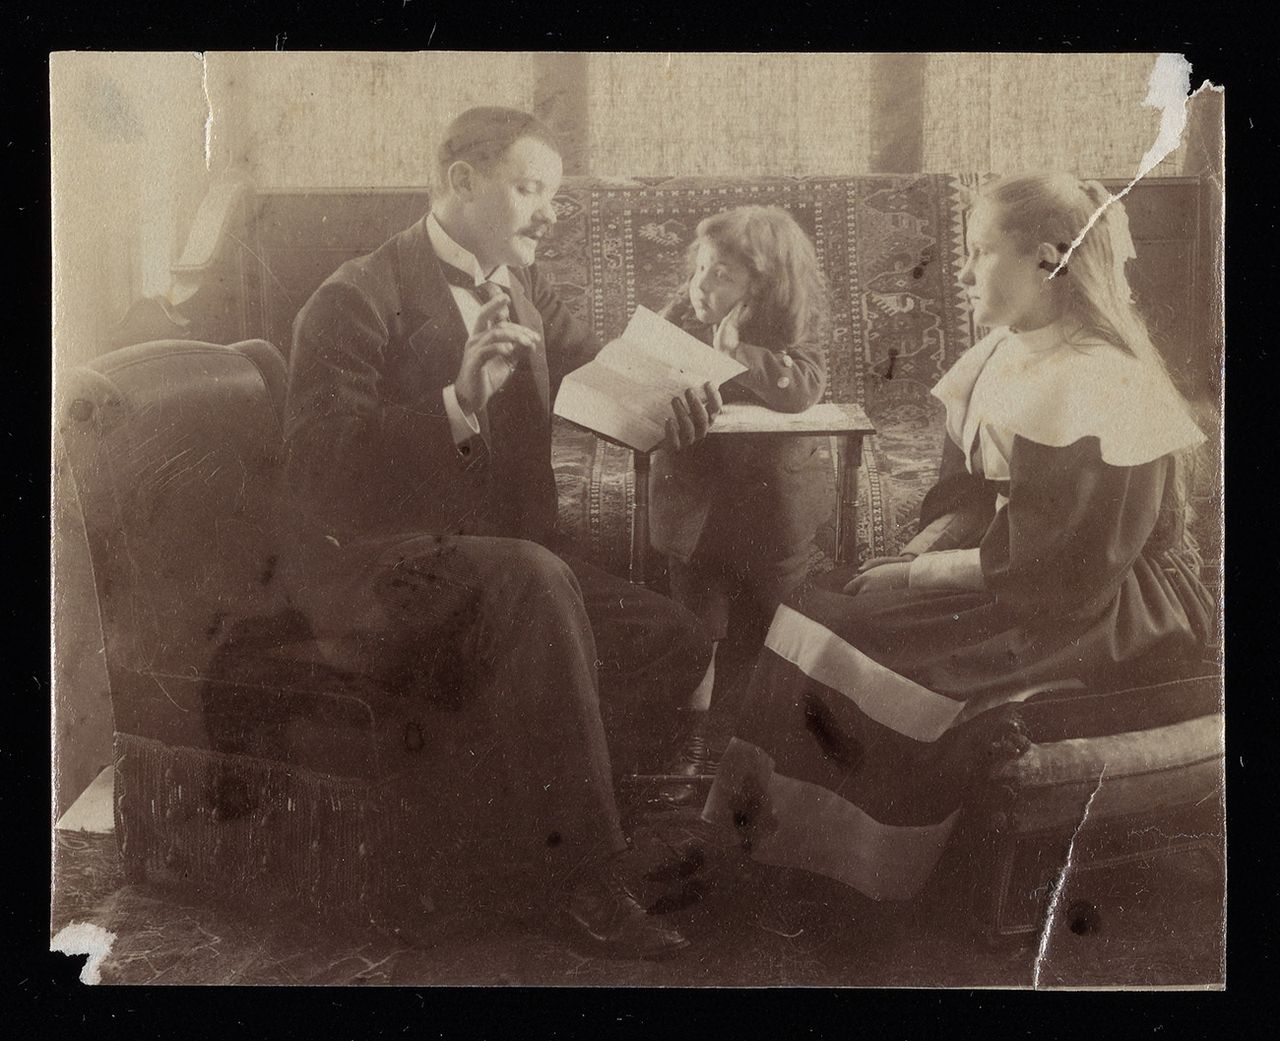 Άνδρας που διαβάζει σε δύο κορίτσια, 1890, άγνωστος φωτογράφος. Pierre de Gigord Συλλογή φωτογραφιών της Οθωμανικής Αυτοκρατορίας και της Δημοκρατίας της Τουρκίας. The Getty Research Institute, 96.R.14. Ψηφιακή εικόνα ευγενική προσφορά του Προγράμματος Ανοικτού Περιεχομένου του Getty